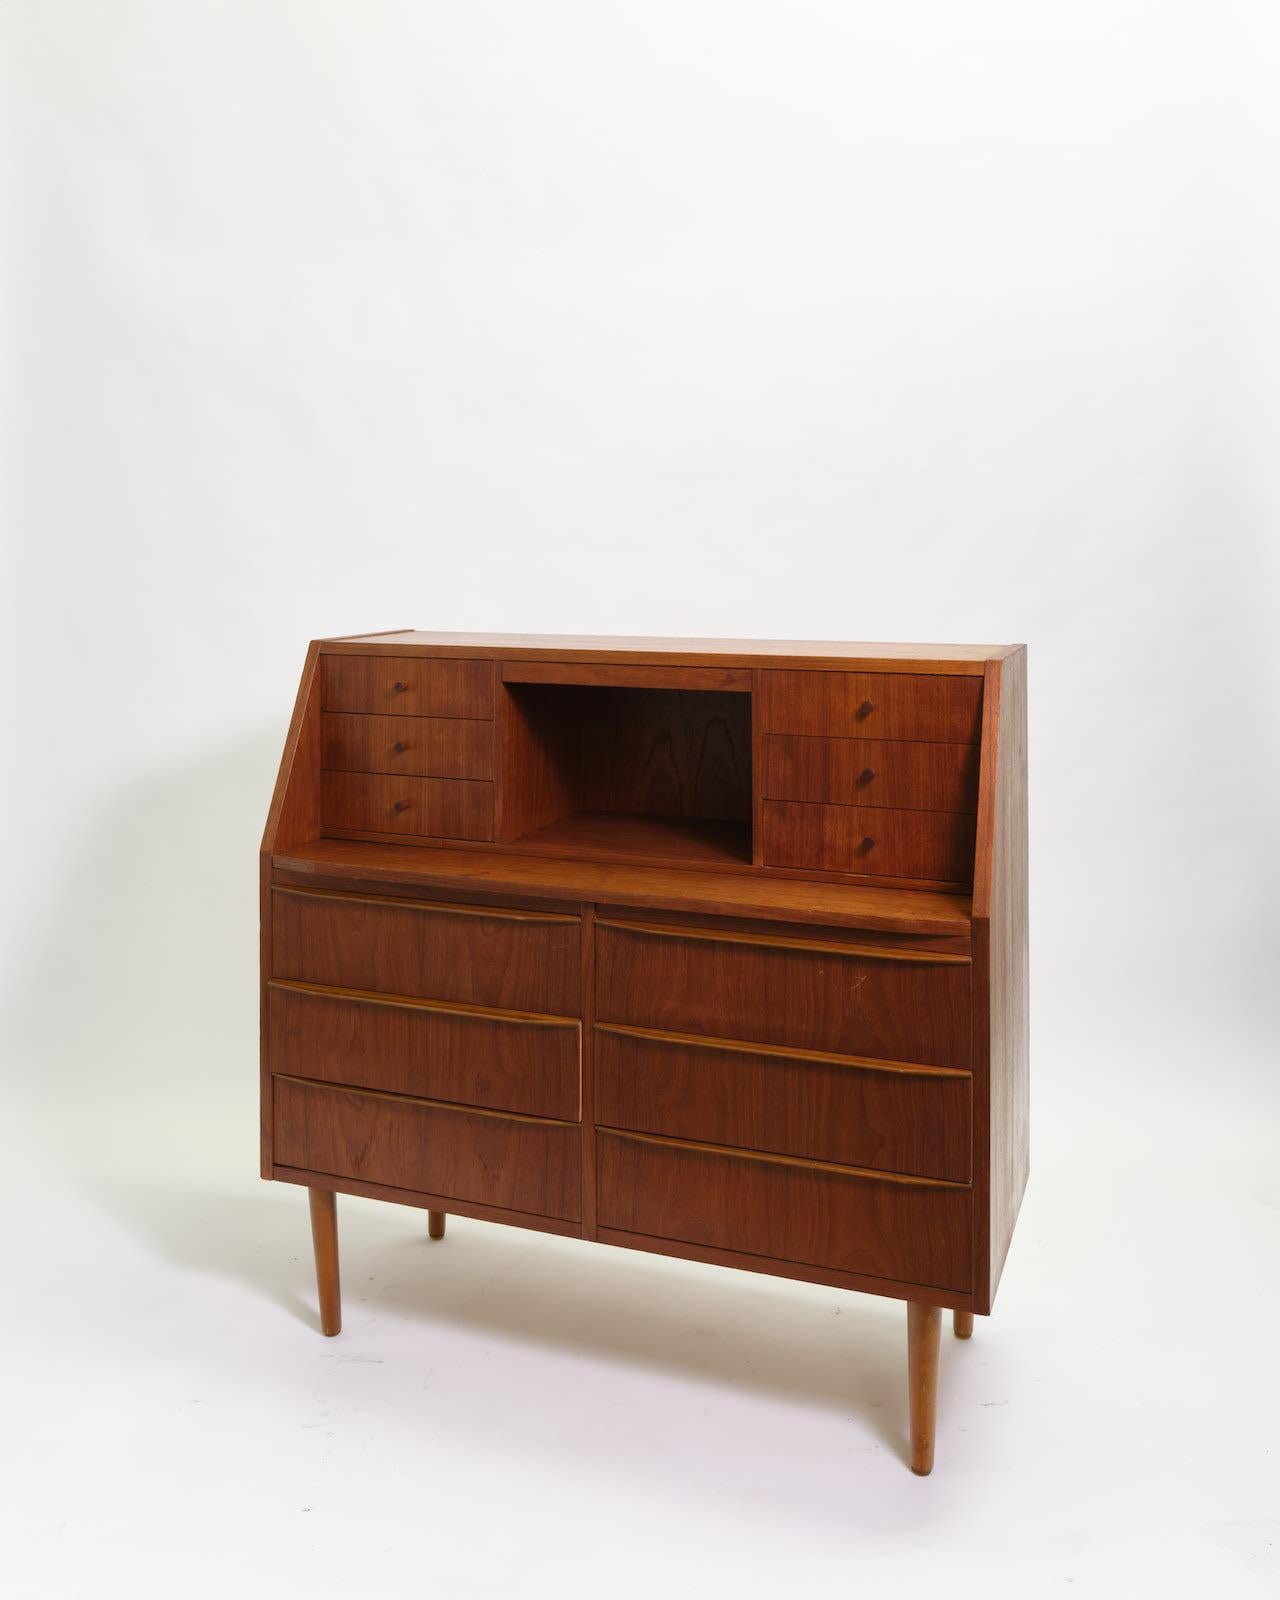 Bureau en teck avec six petits tiroirs et cuisine sur six autres tiroirs. 

Créé dans les années 1960/70.

Dimensions : H98 x W100 x D40 cm.